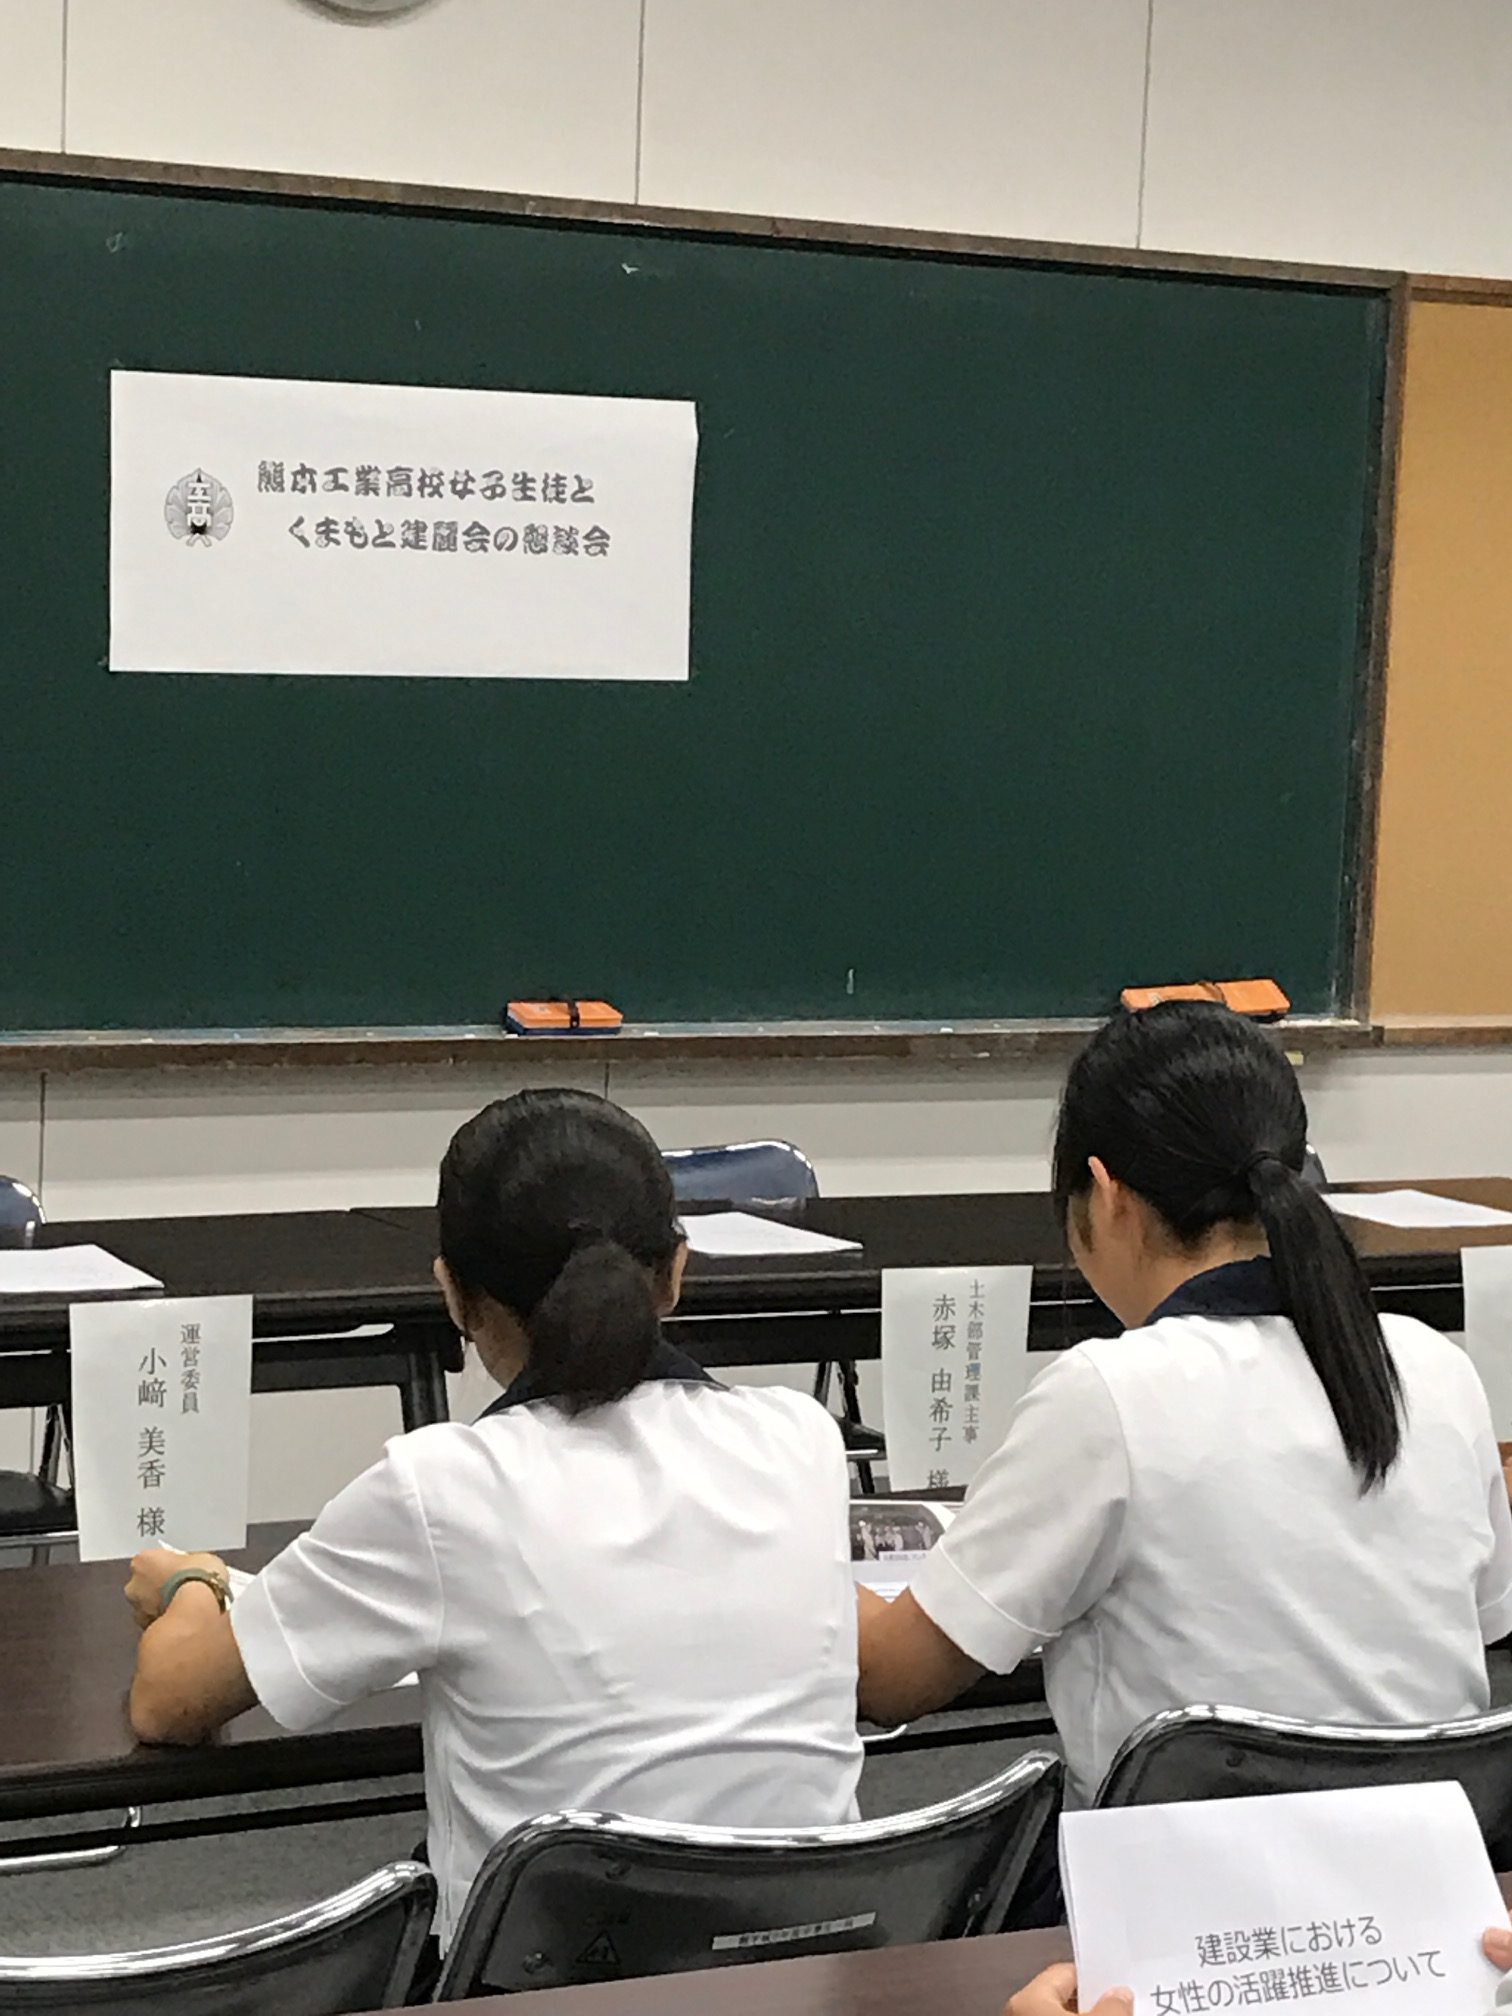 熊本工業高校女子生徒とくまもと建麗会との懇談会